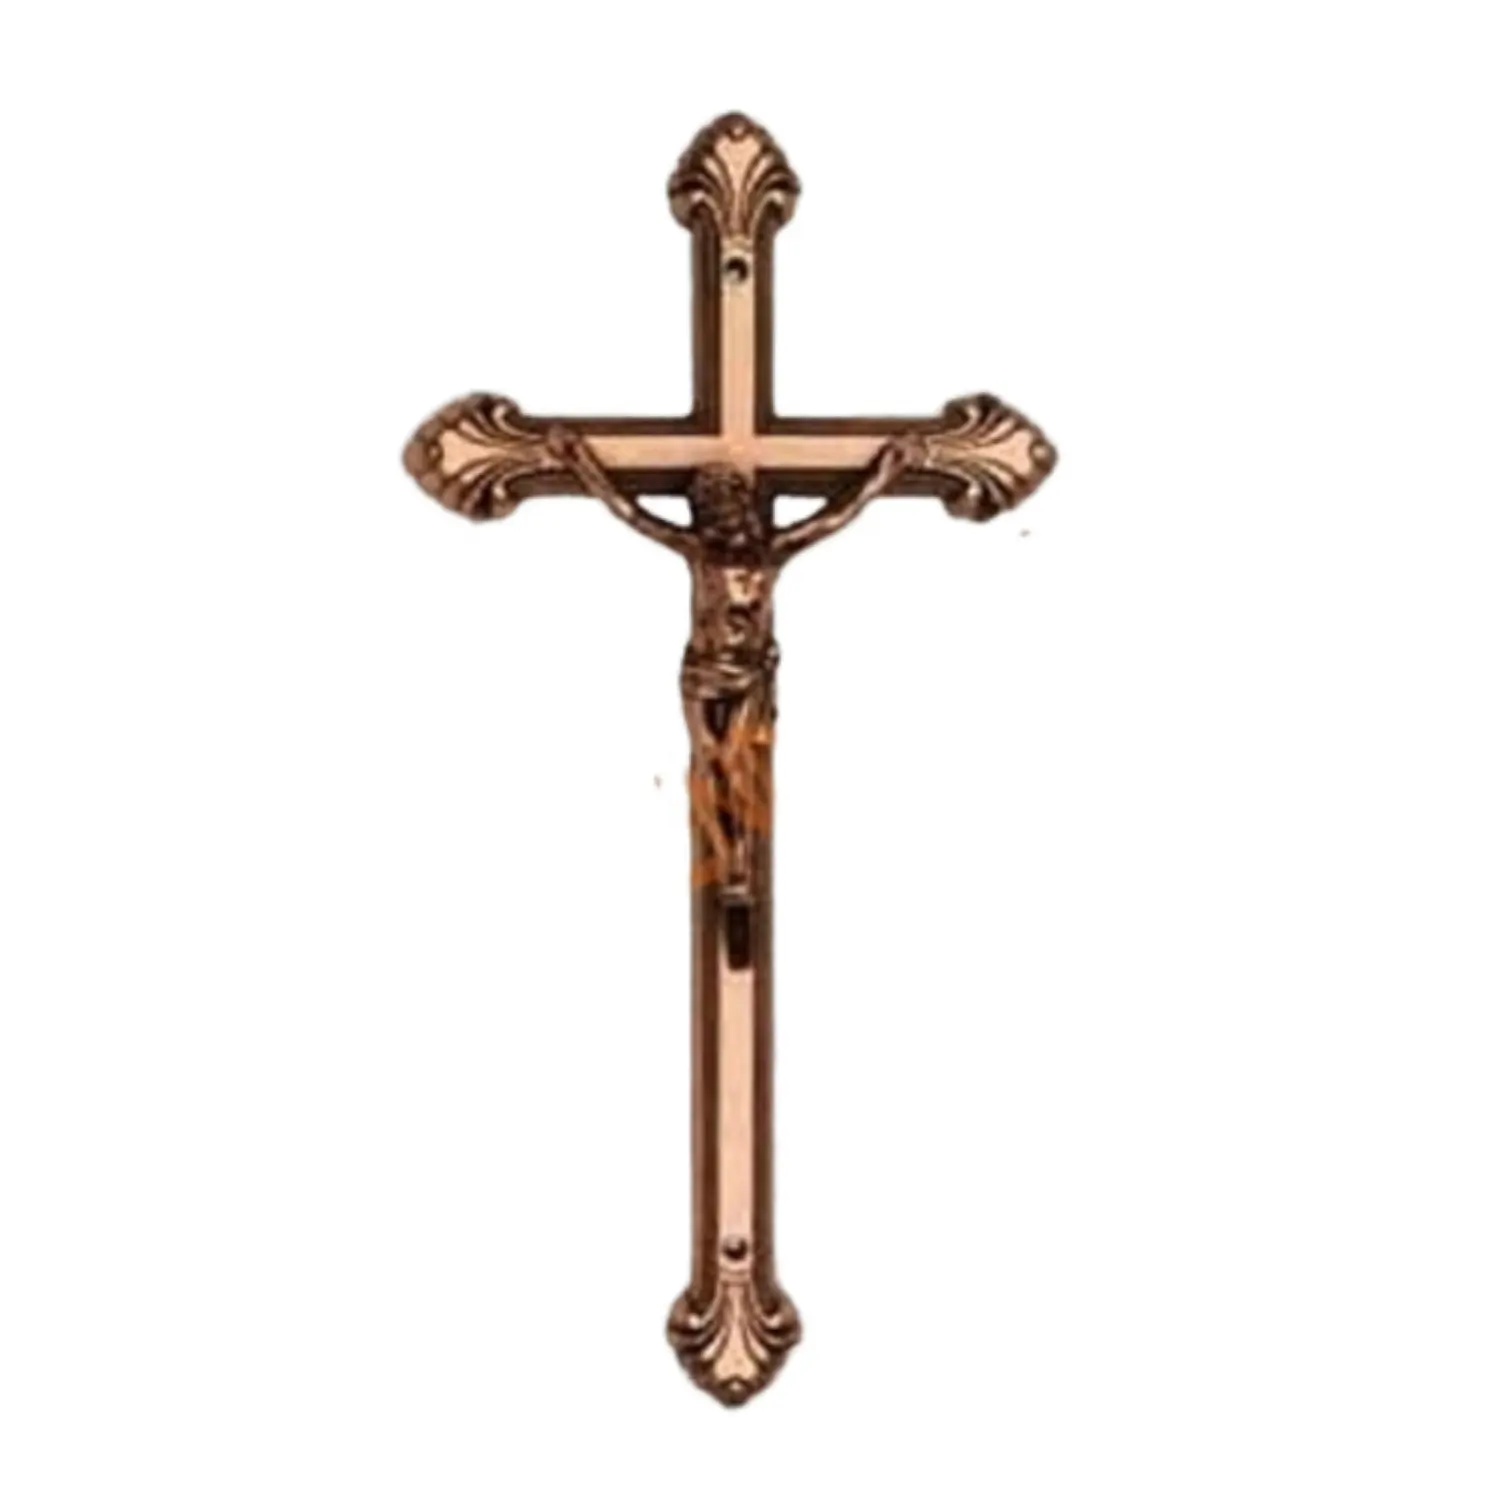 Cruz de crisol, accesorios religiosos decorativos chapados en cobre dorado